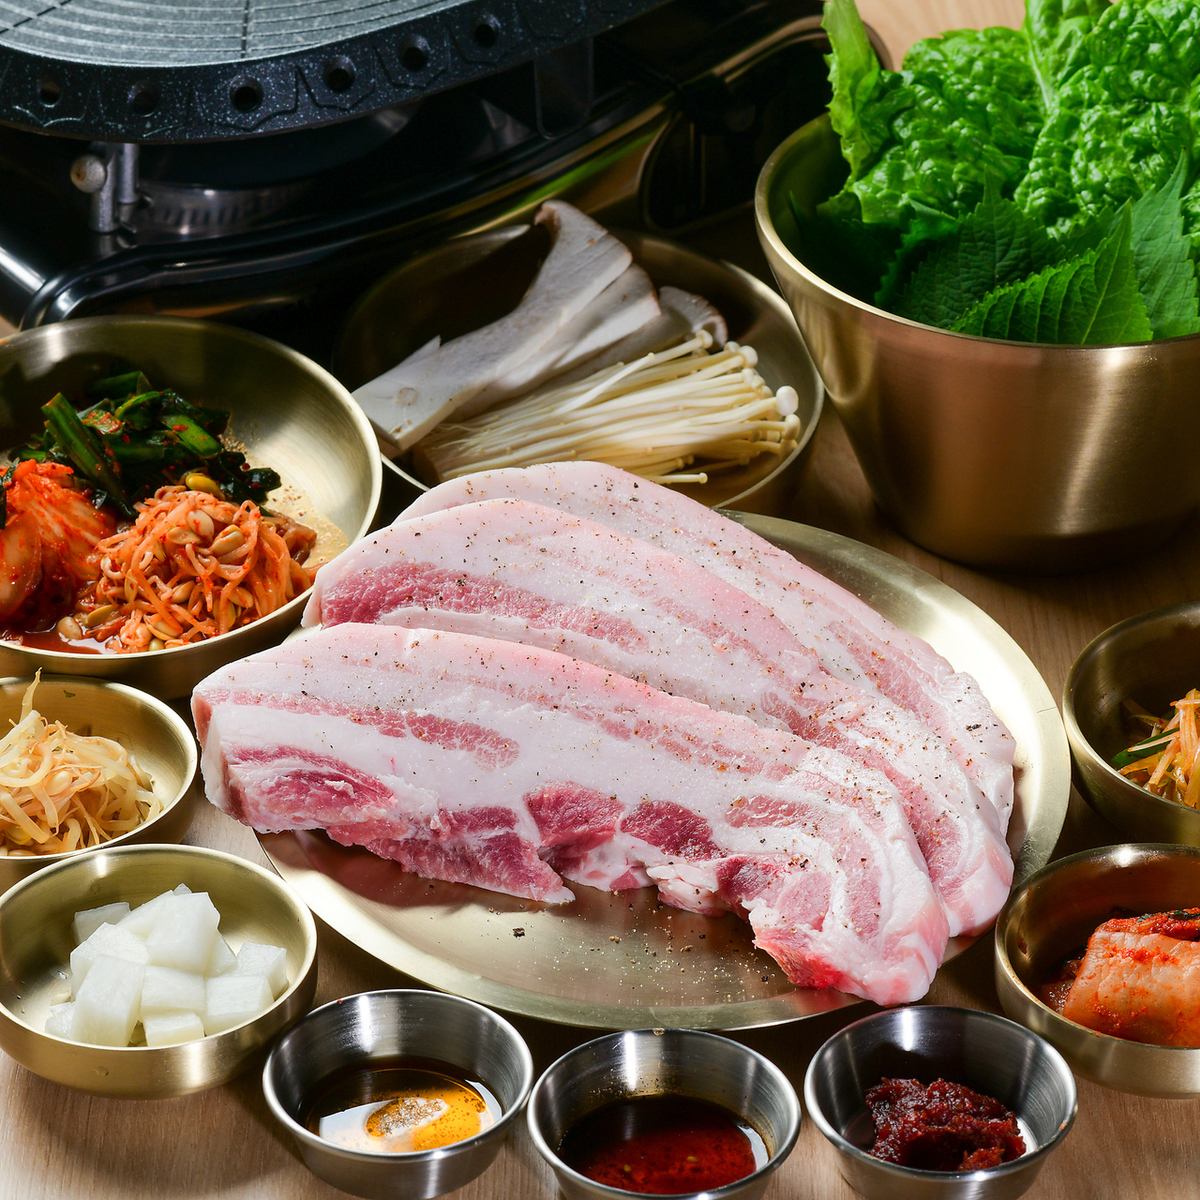 請享用我們嚴選的名牌豬肉上州麥豬和韓國料理！